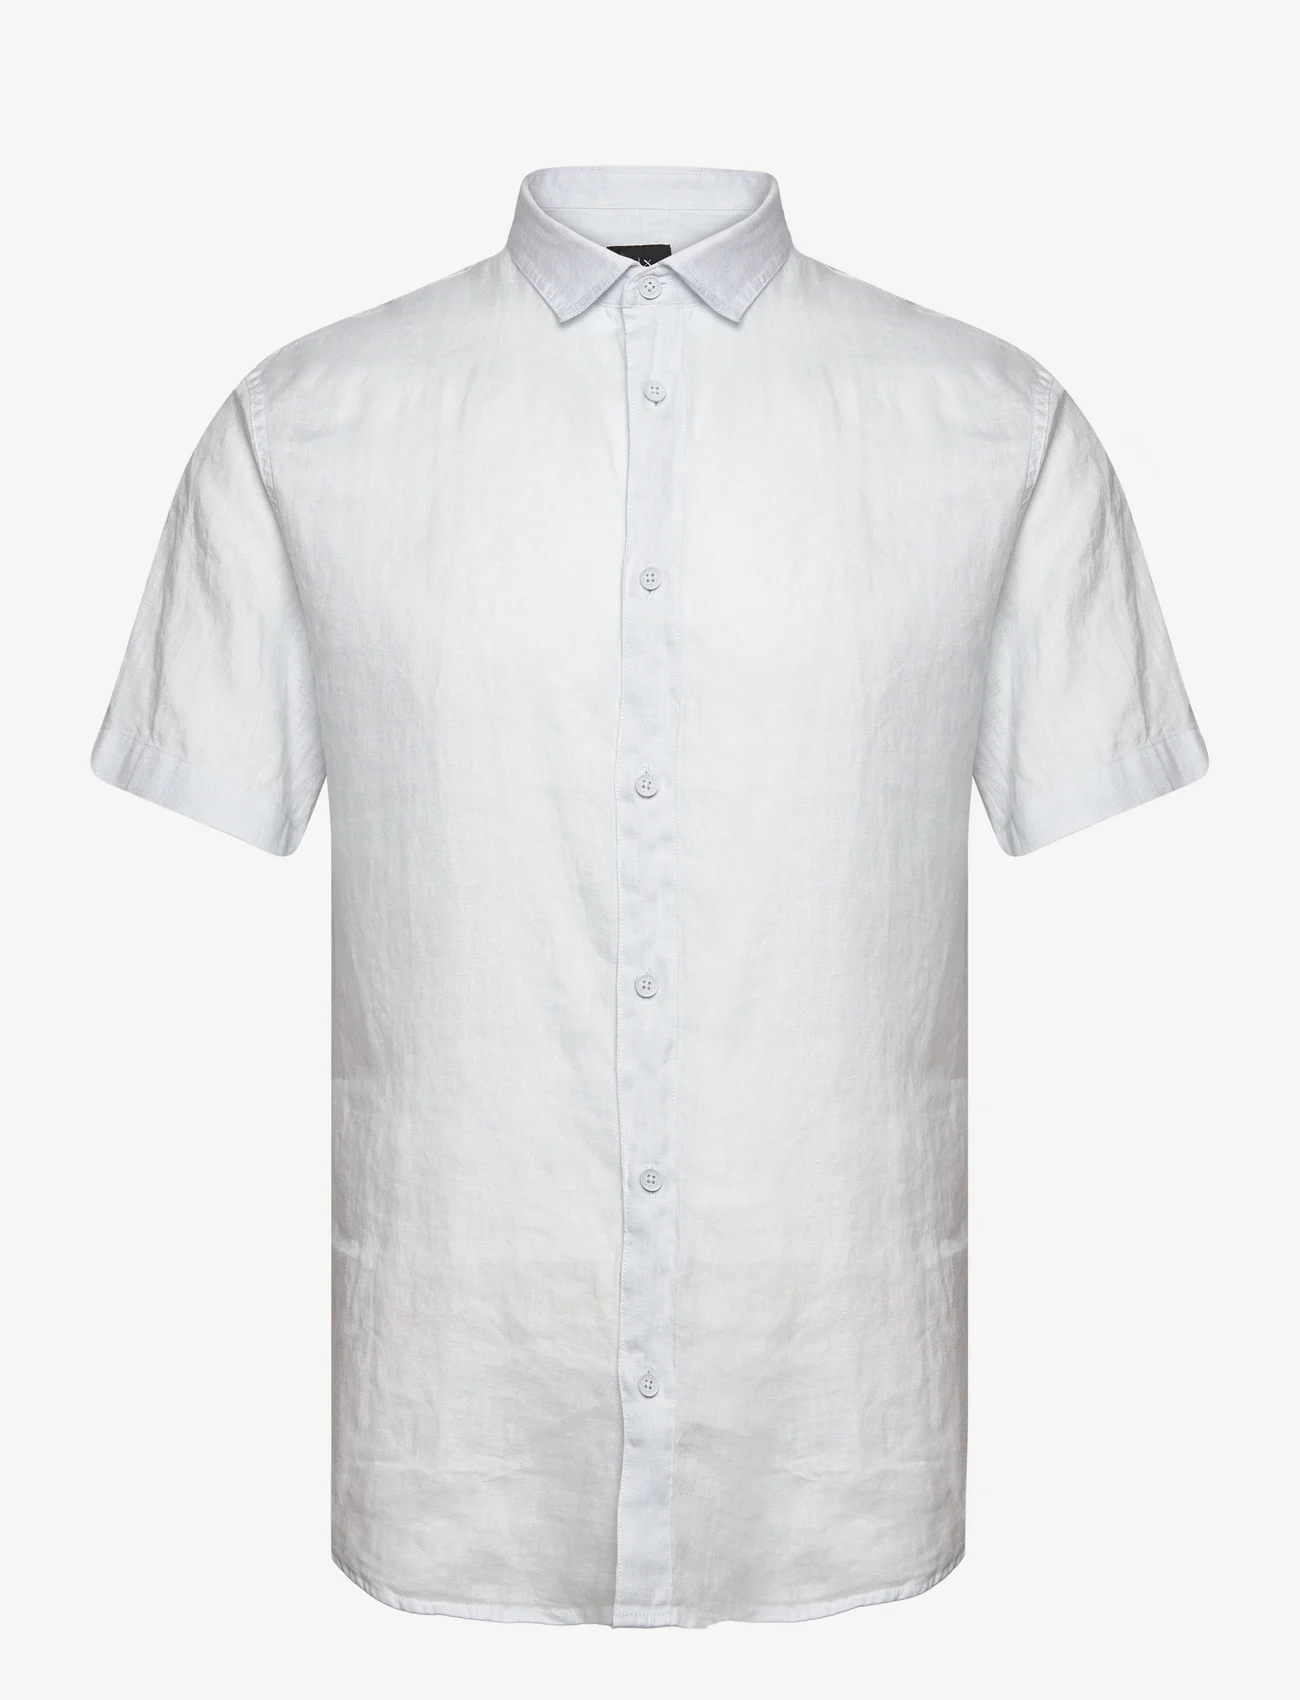 Armani Exchange - SHIRT - lininiai marškiniai - 15cz-illusion blue - 0